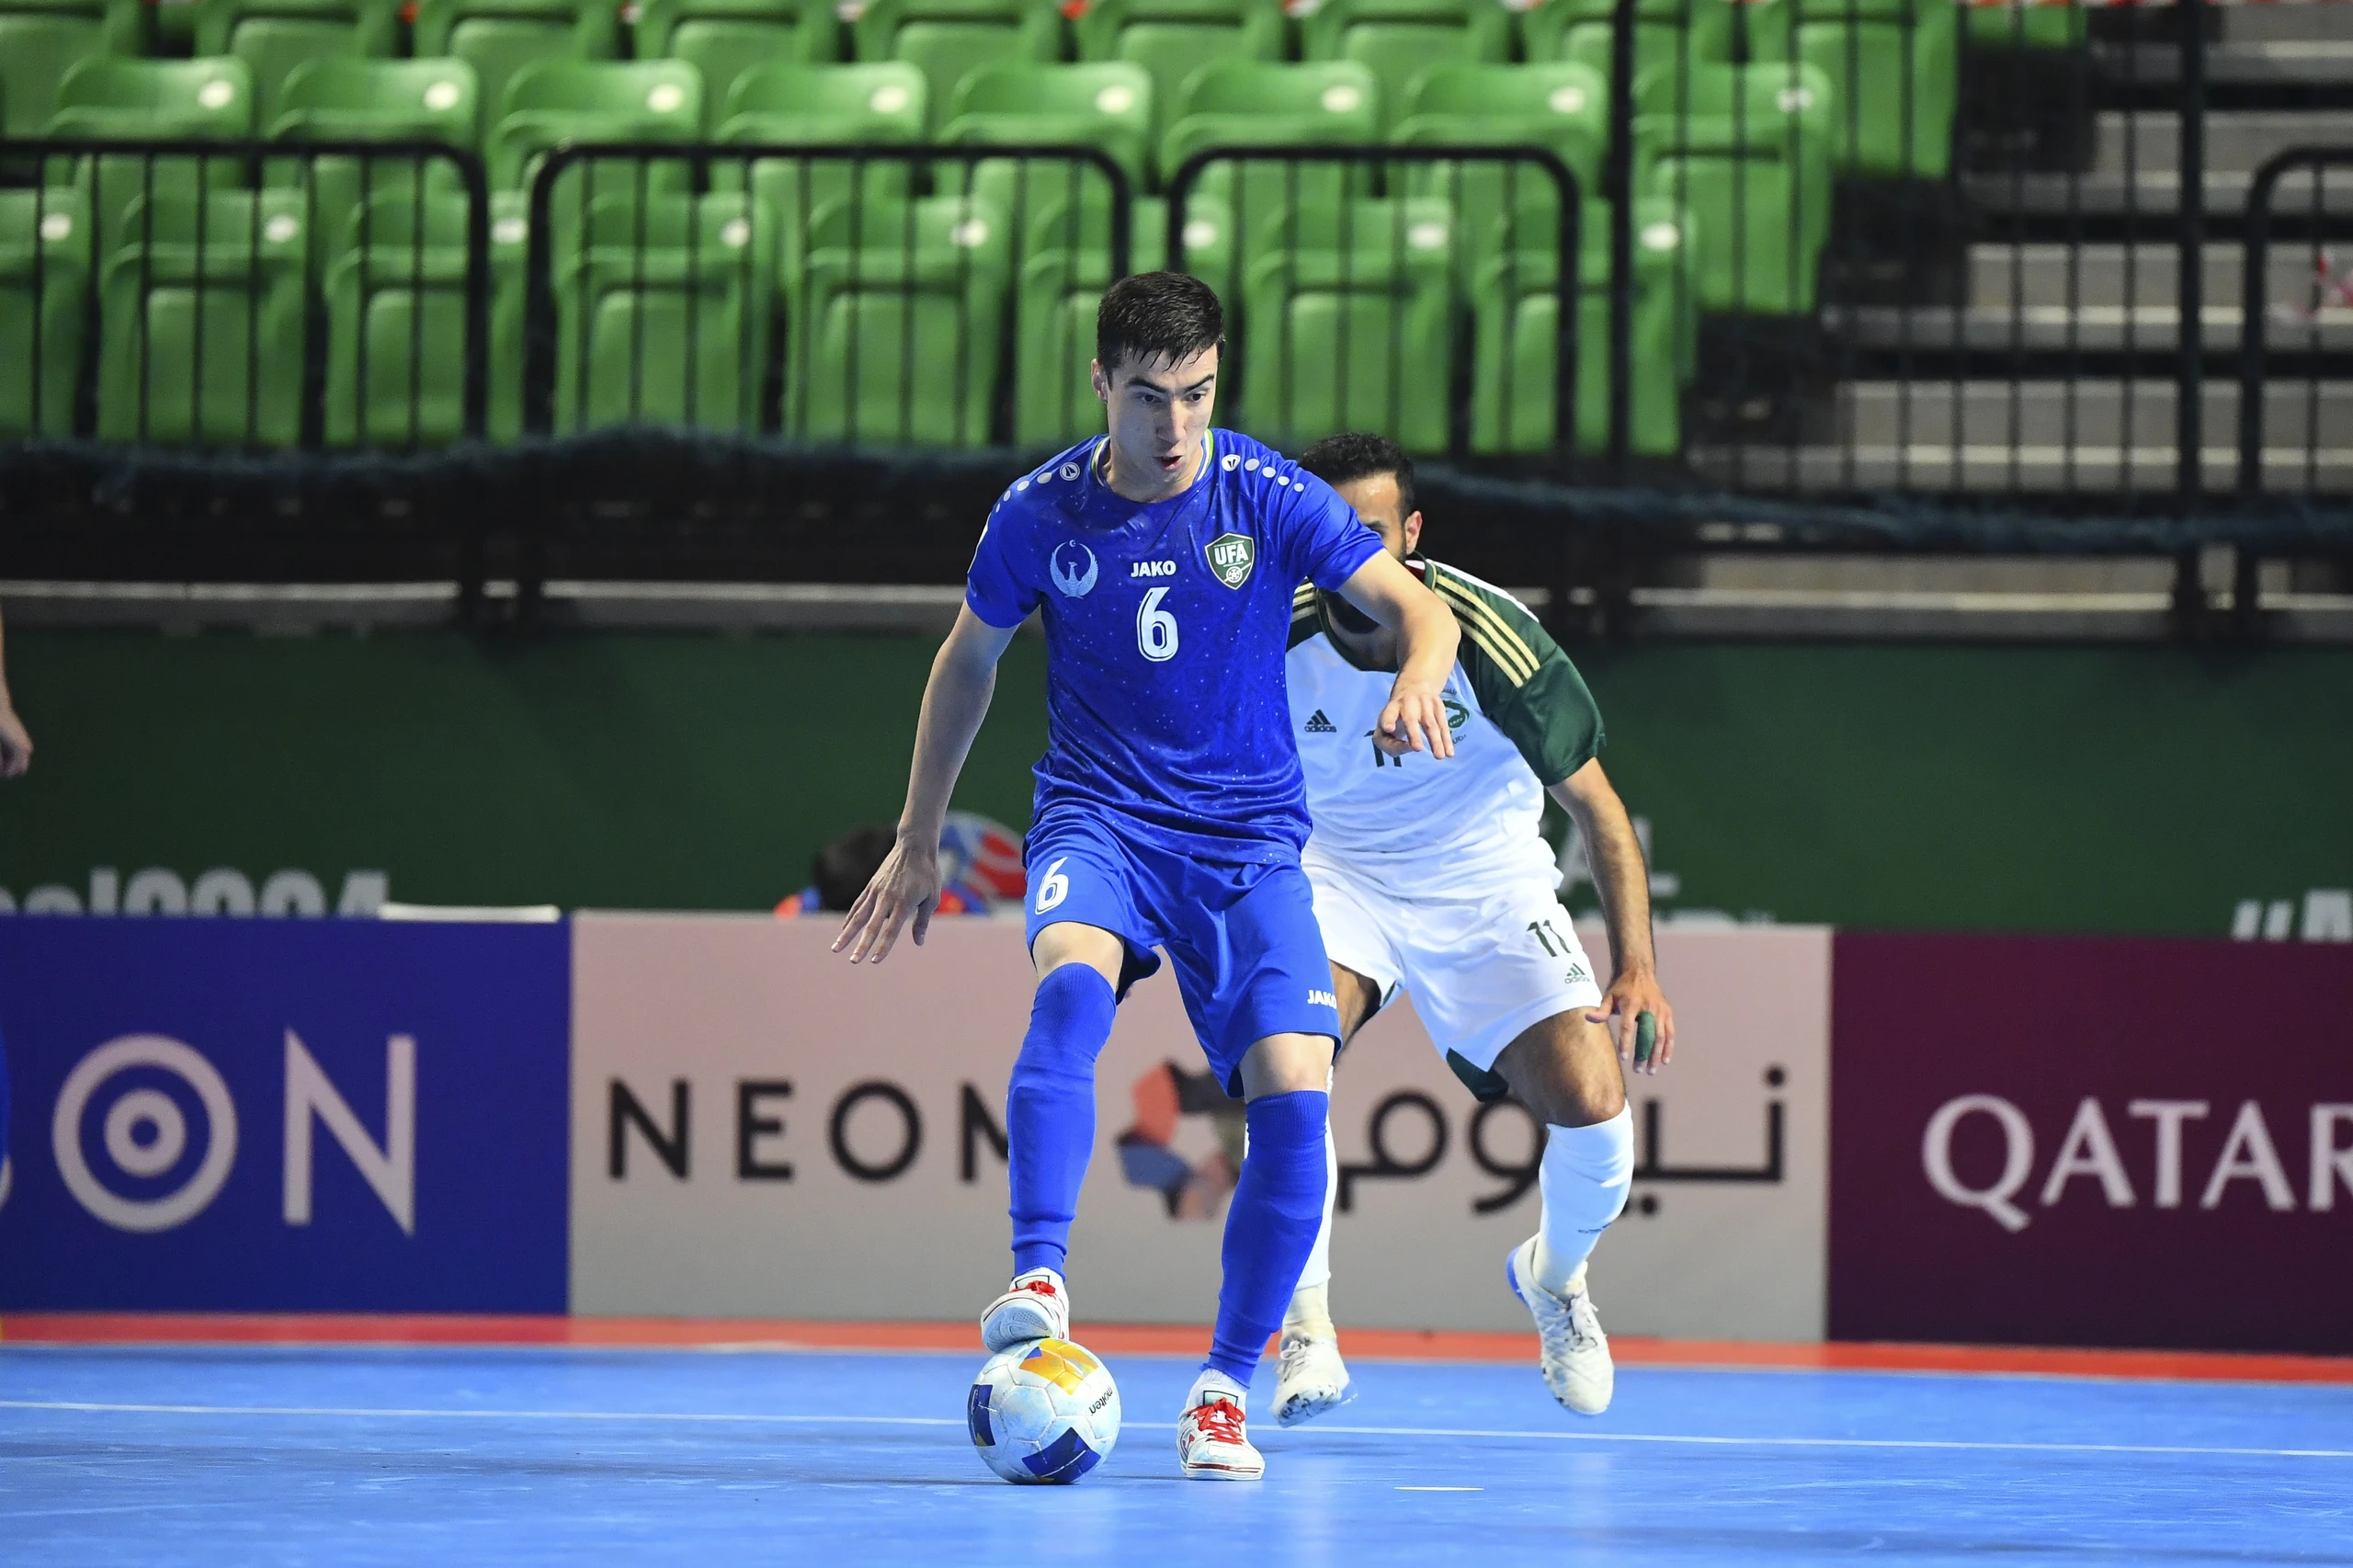 Đội tuyển Việt Nam đụng đối thủ cực mạnh ở tứ kết futsal châu Á